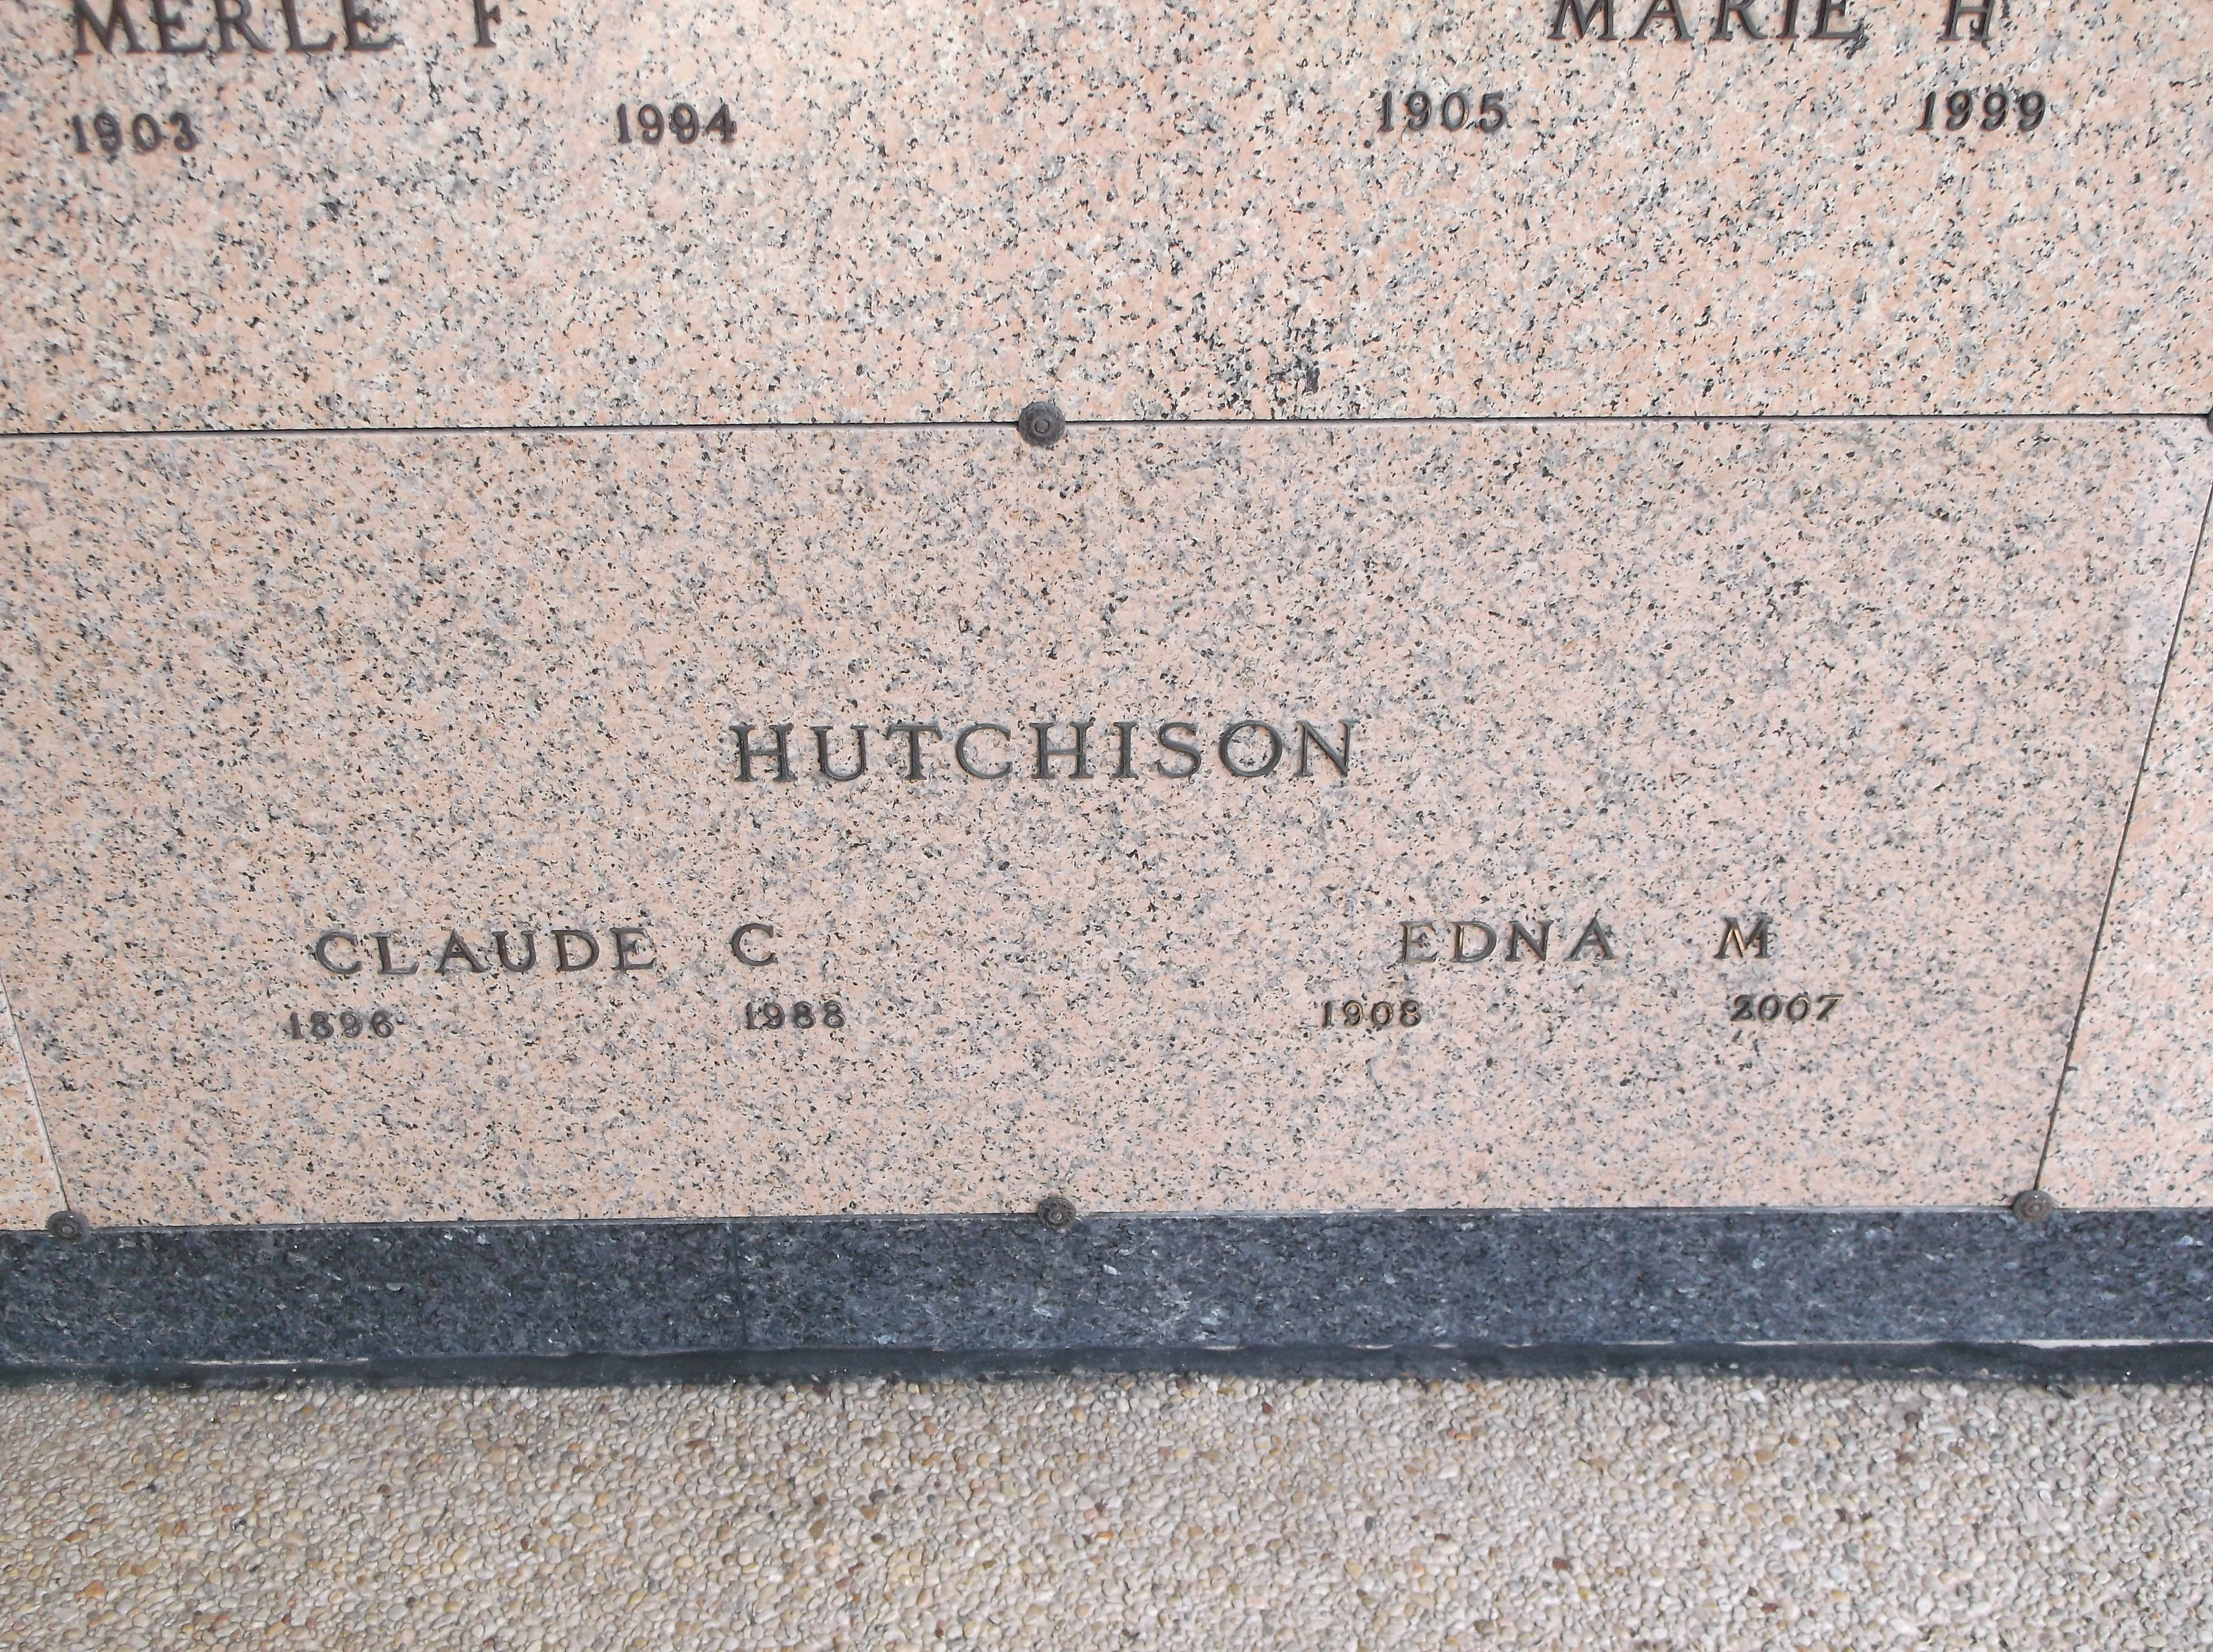 Edna M Hutchison